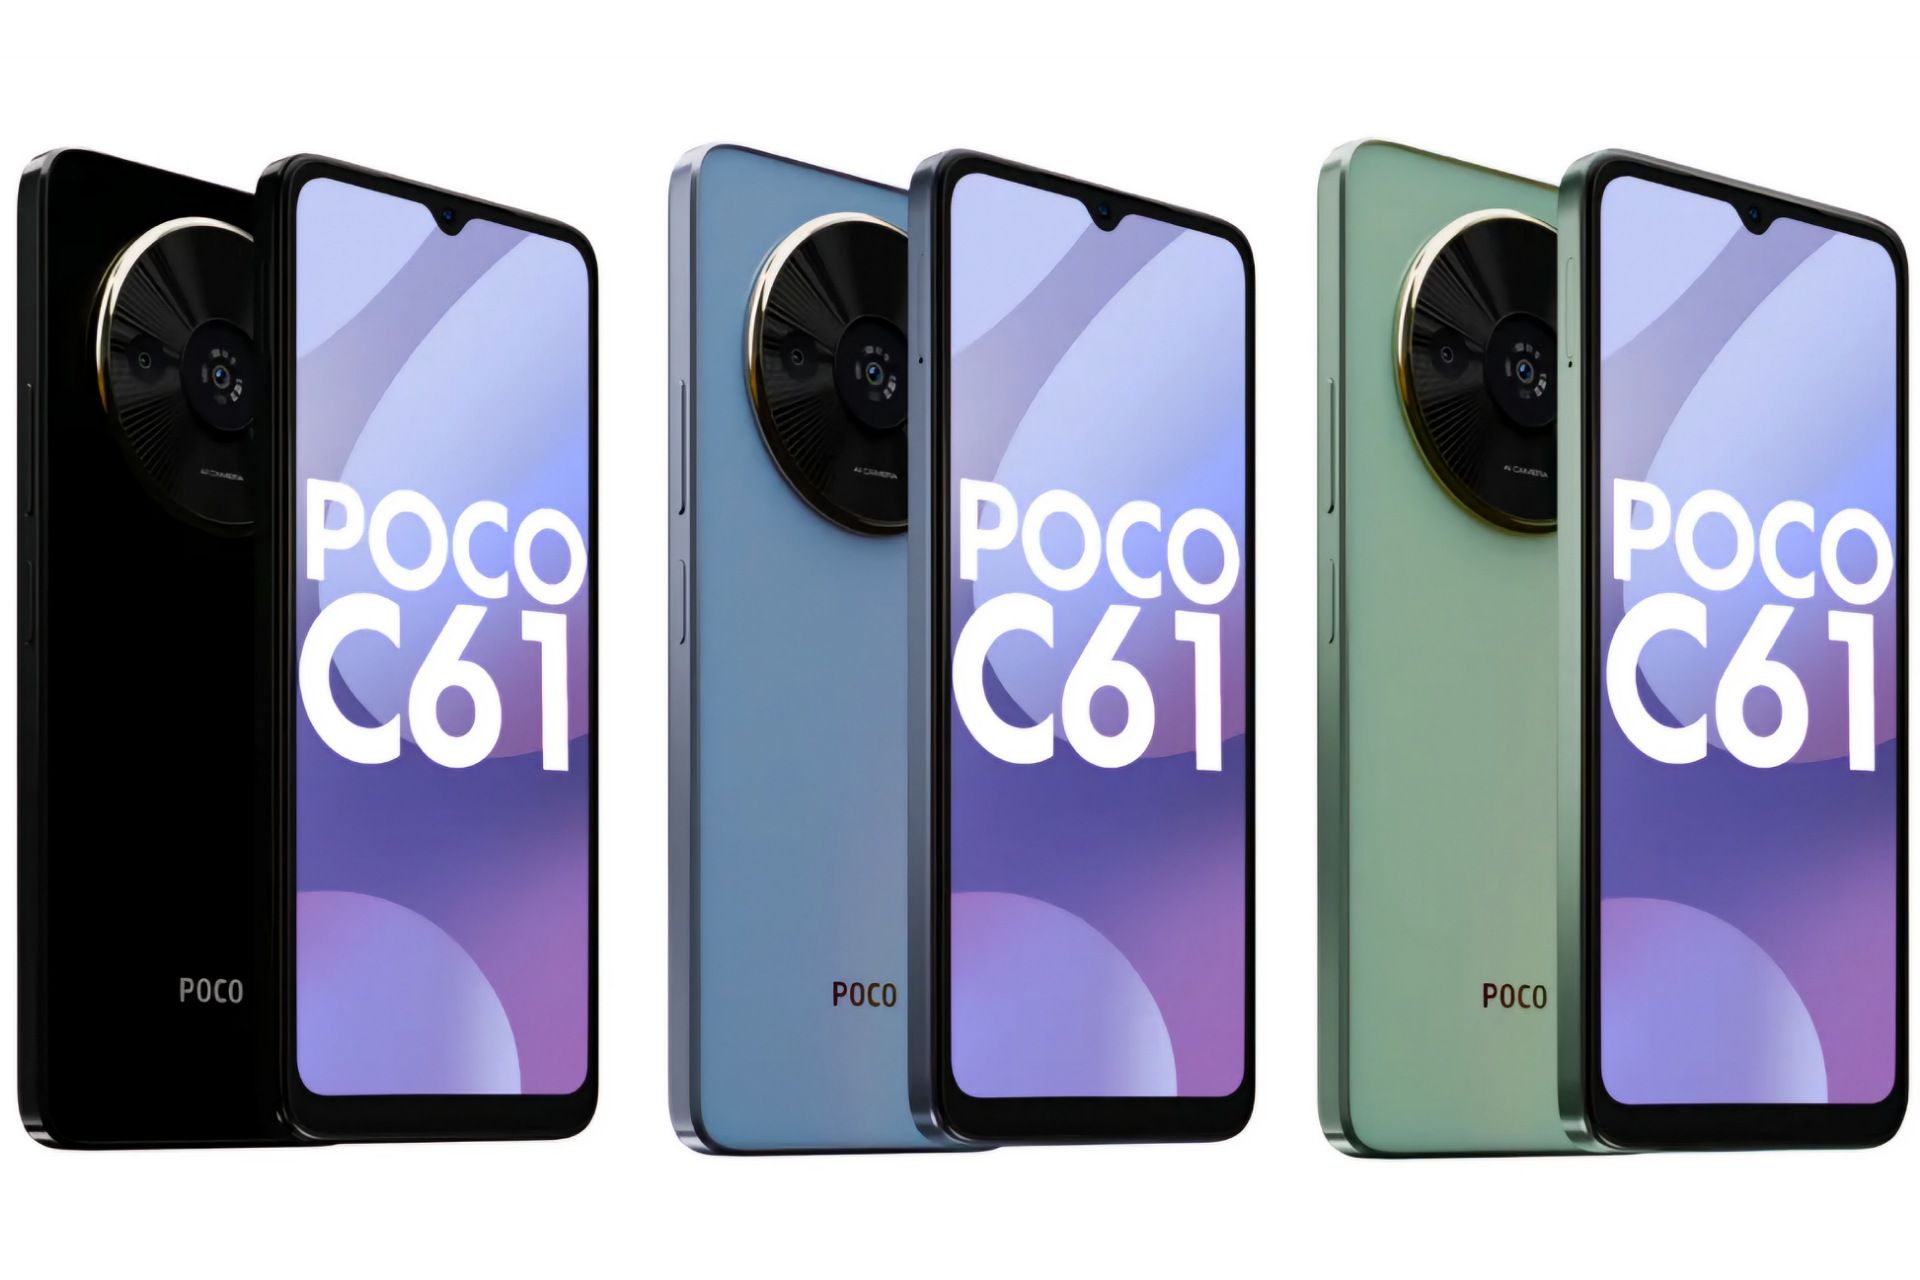 سه عدد گوشی پوکو C61 در کنار یکدیگر